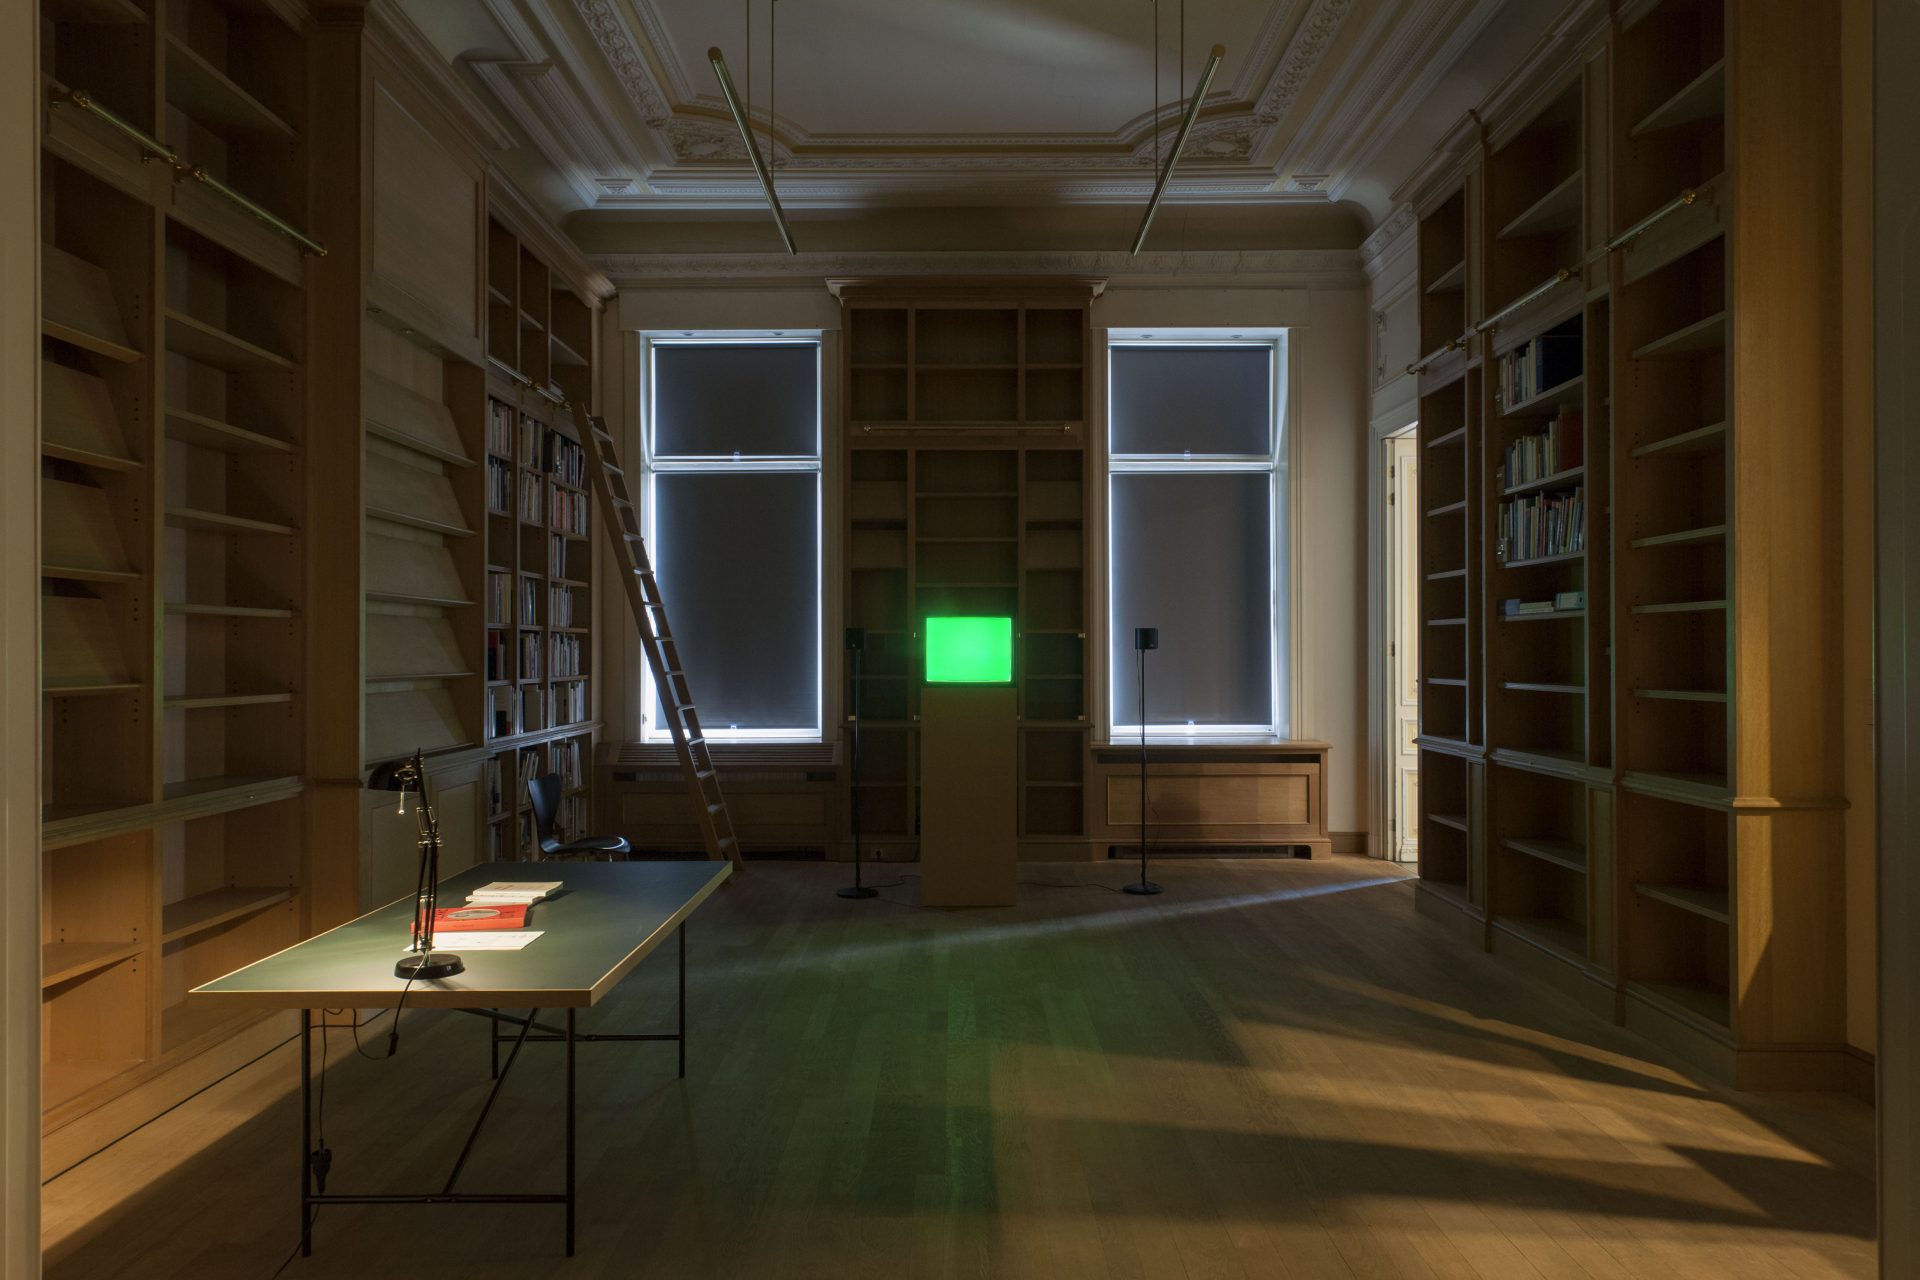 Pierre Bismuth, installation view at Jan Mot, 2015